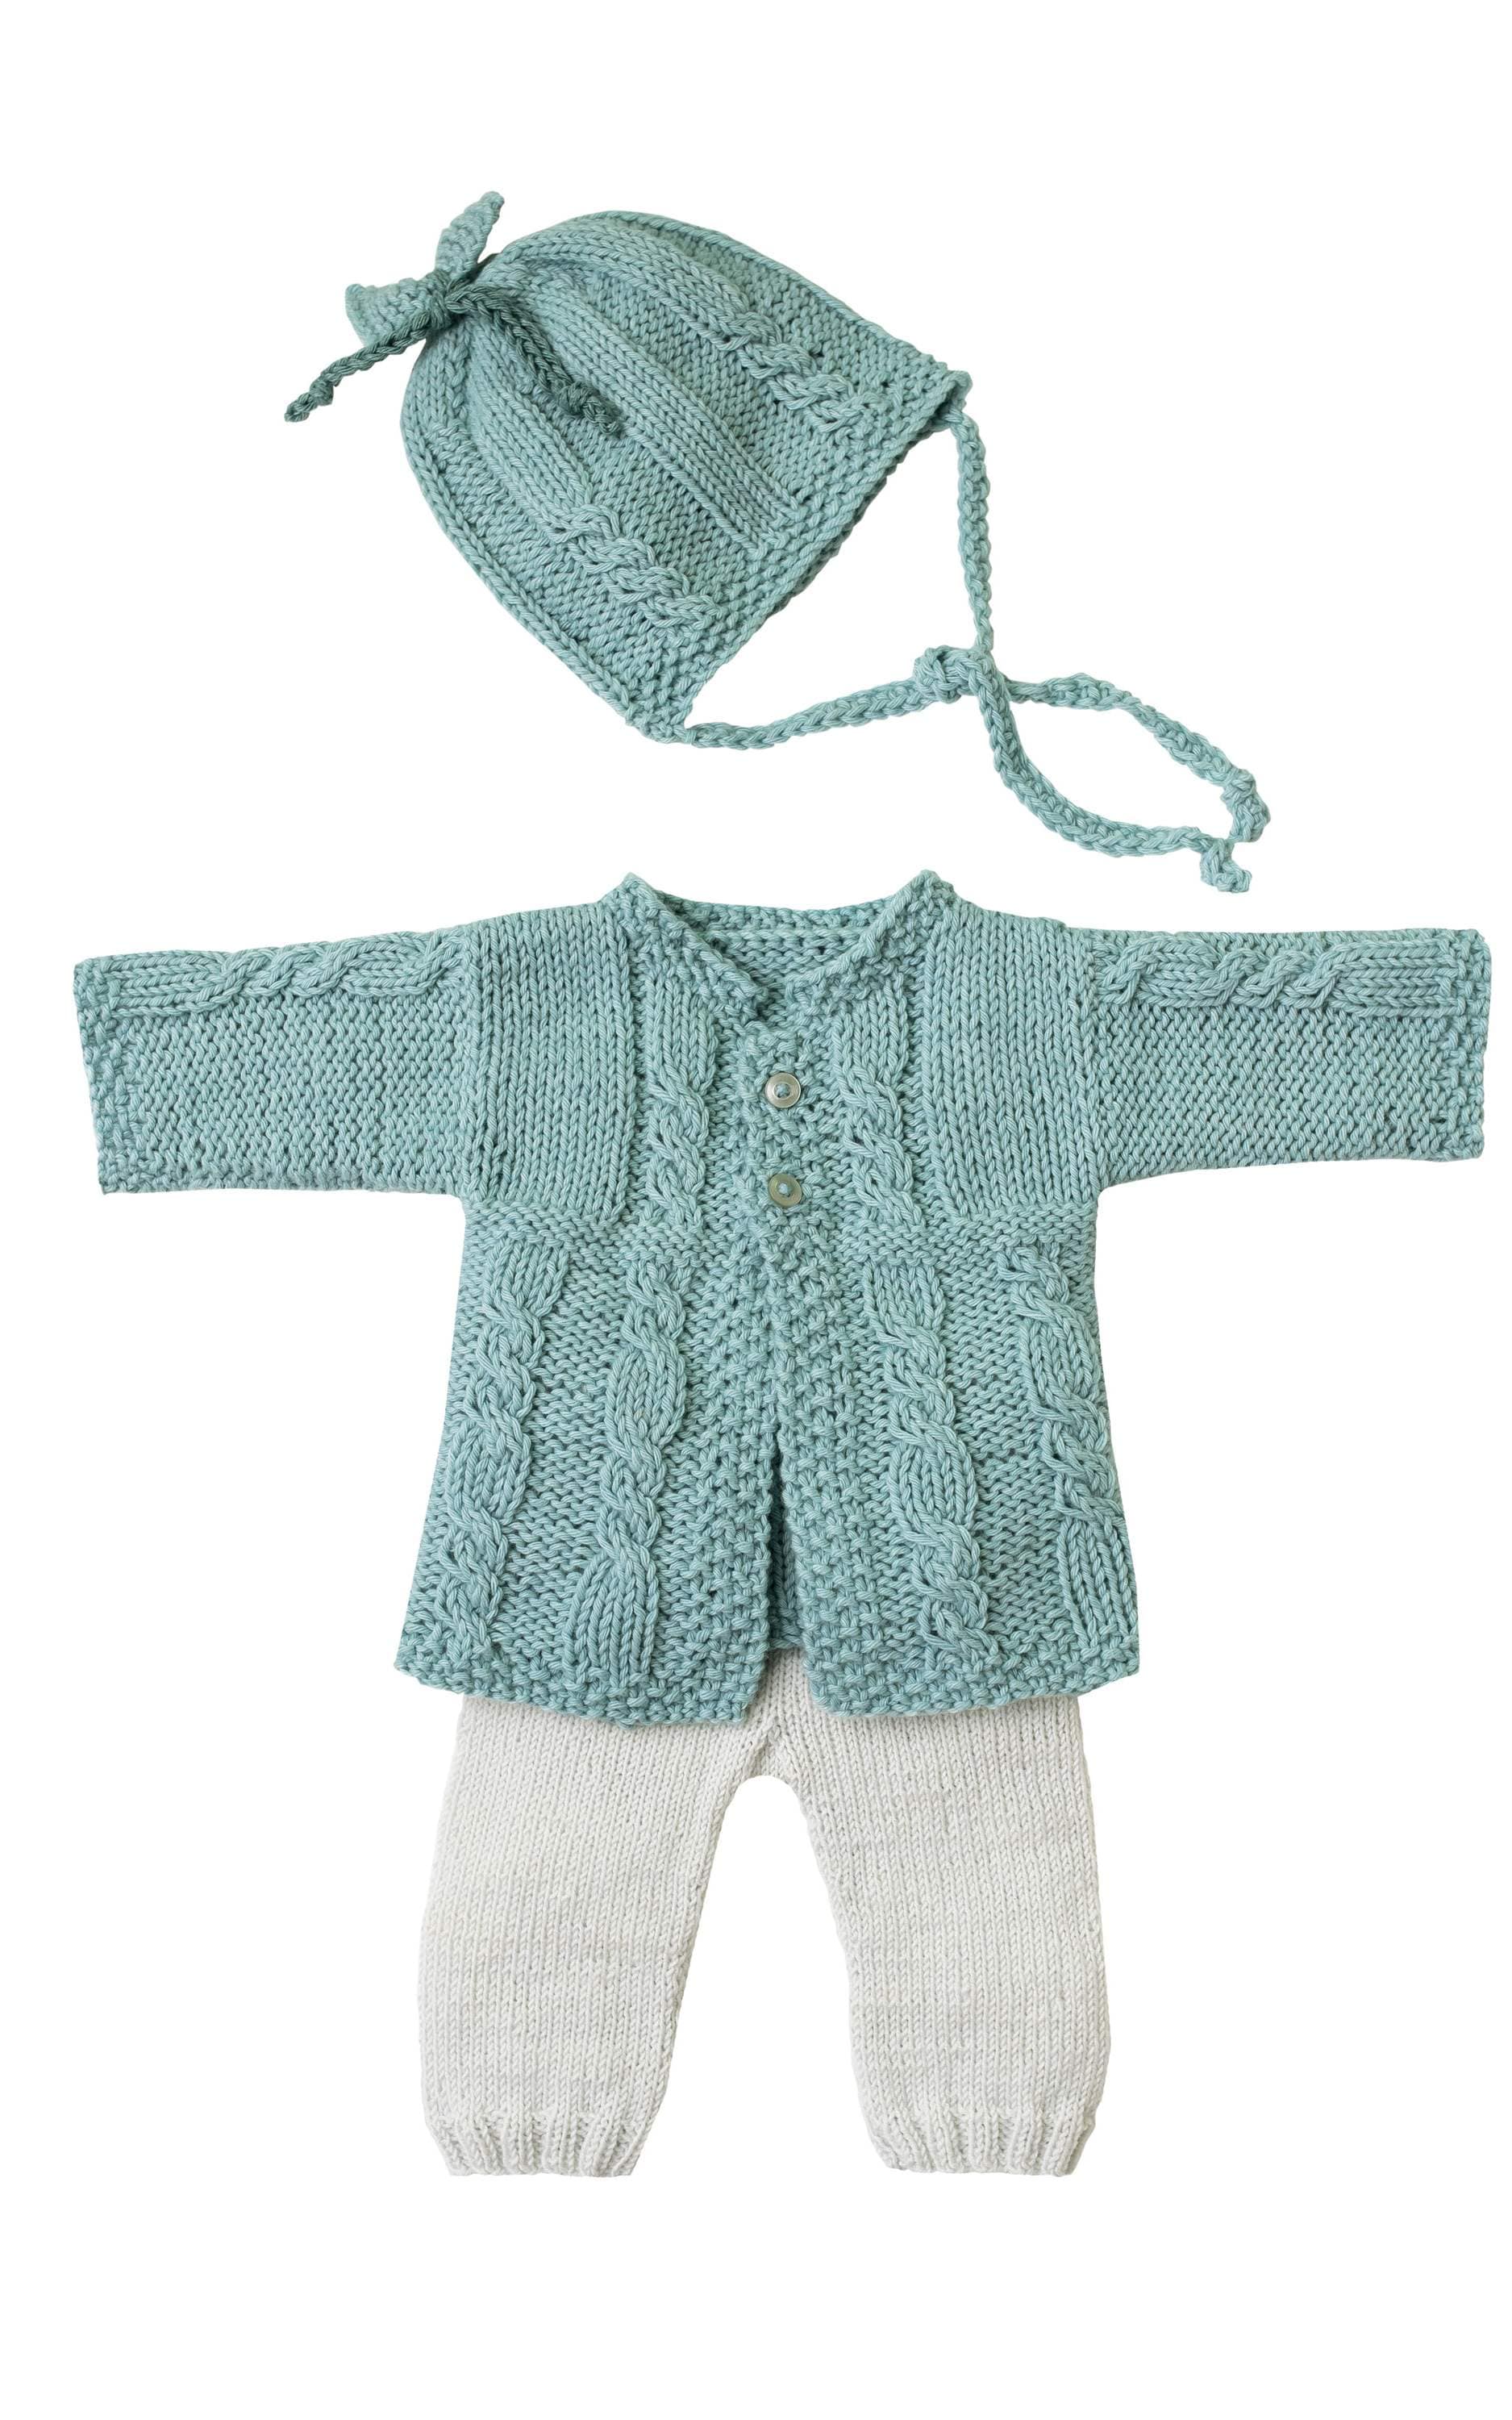 Baby Jacke mit Zopfmuster - Strickset von LANA GROSSA jetzt online kaufen bei OONIQUE